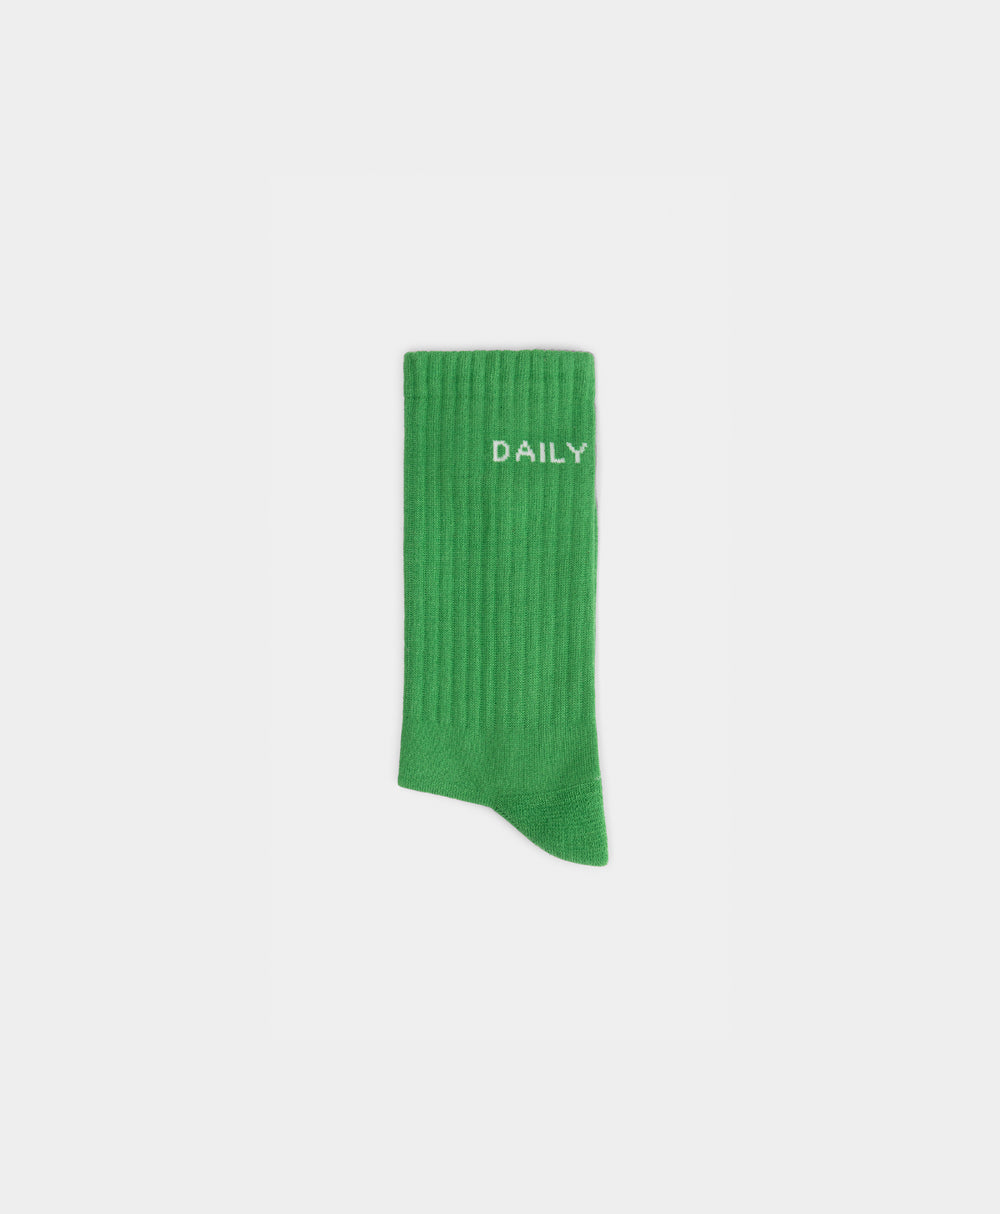 DP - Absinth Green Pra Socks - Packshot - Rear